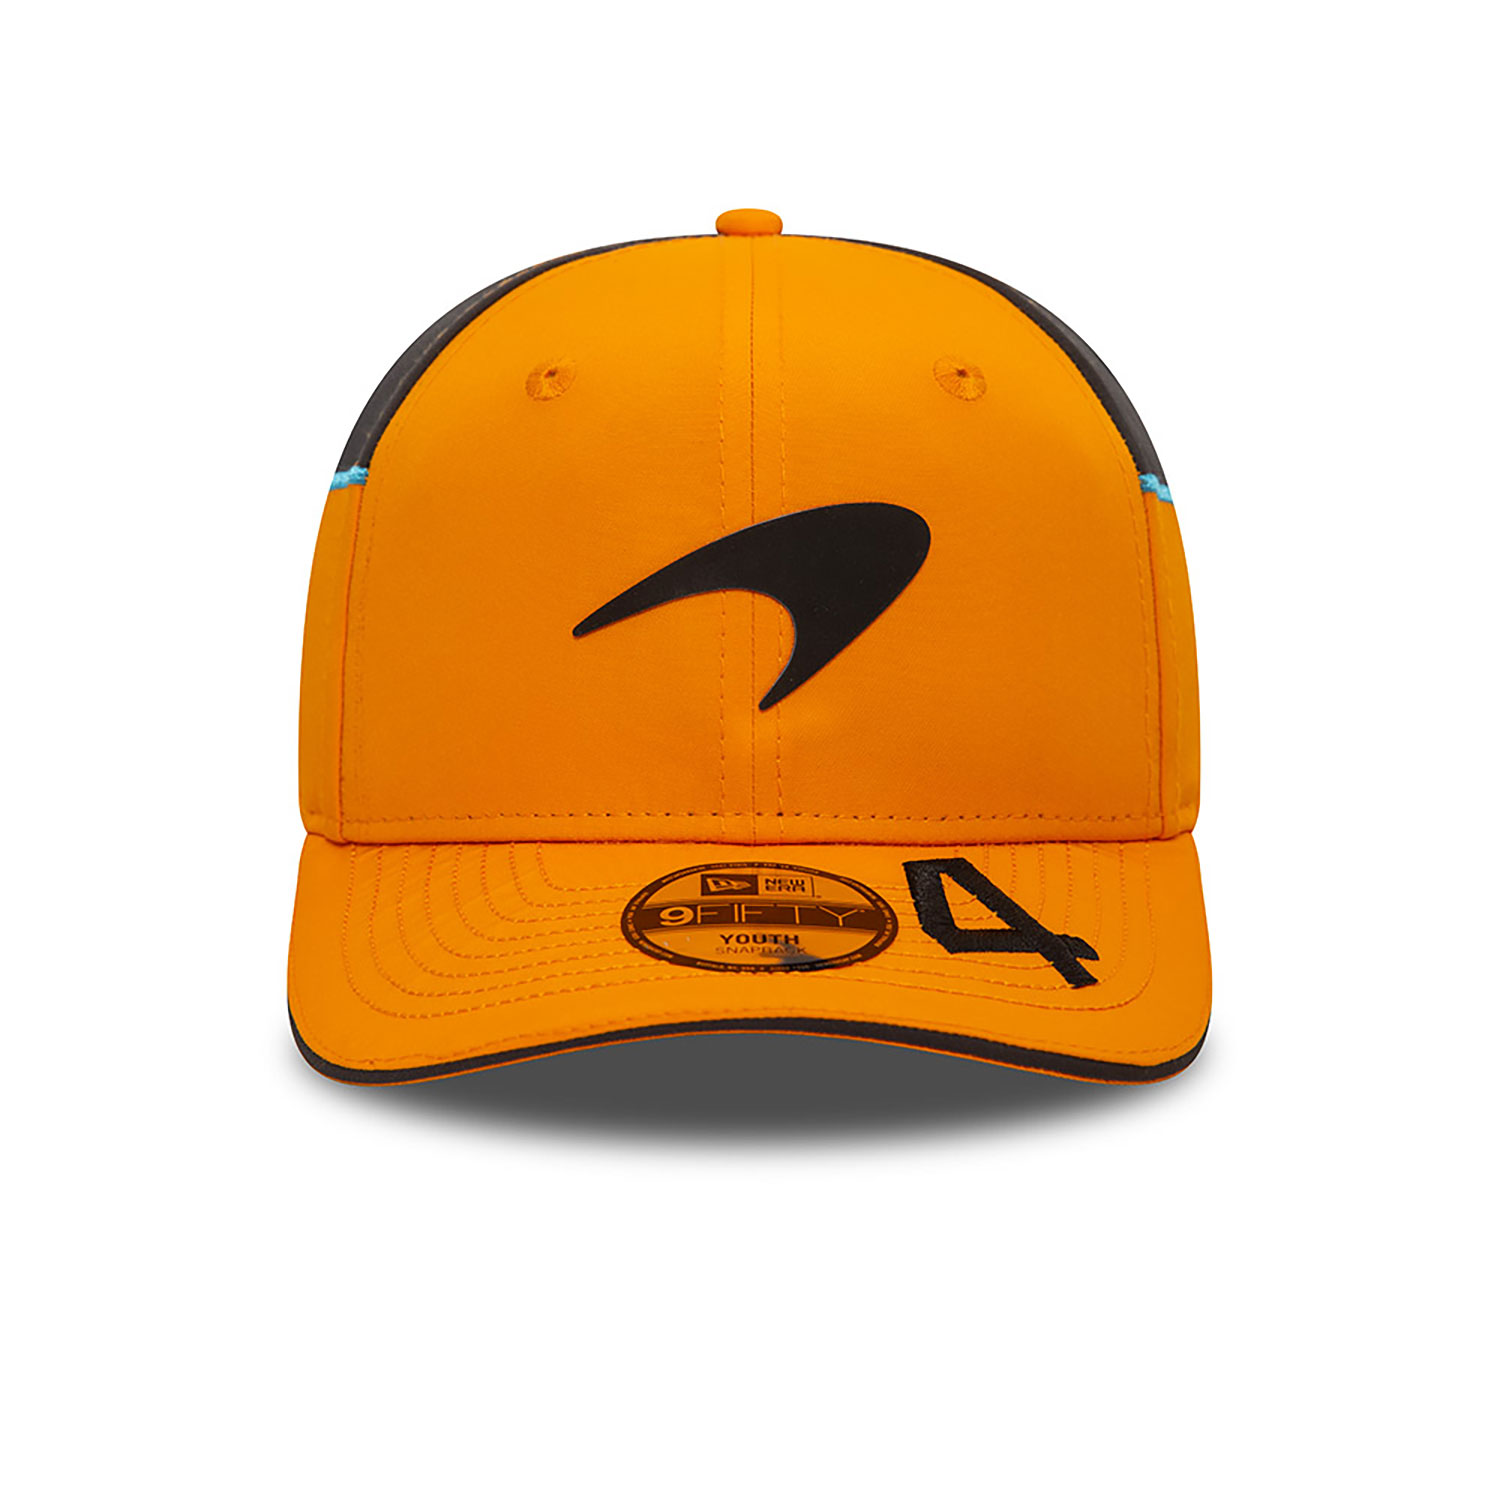 McLaren Racing Youth Lando Norris Orange 9FIFTY Snapback Cap